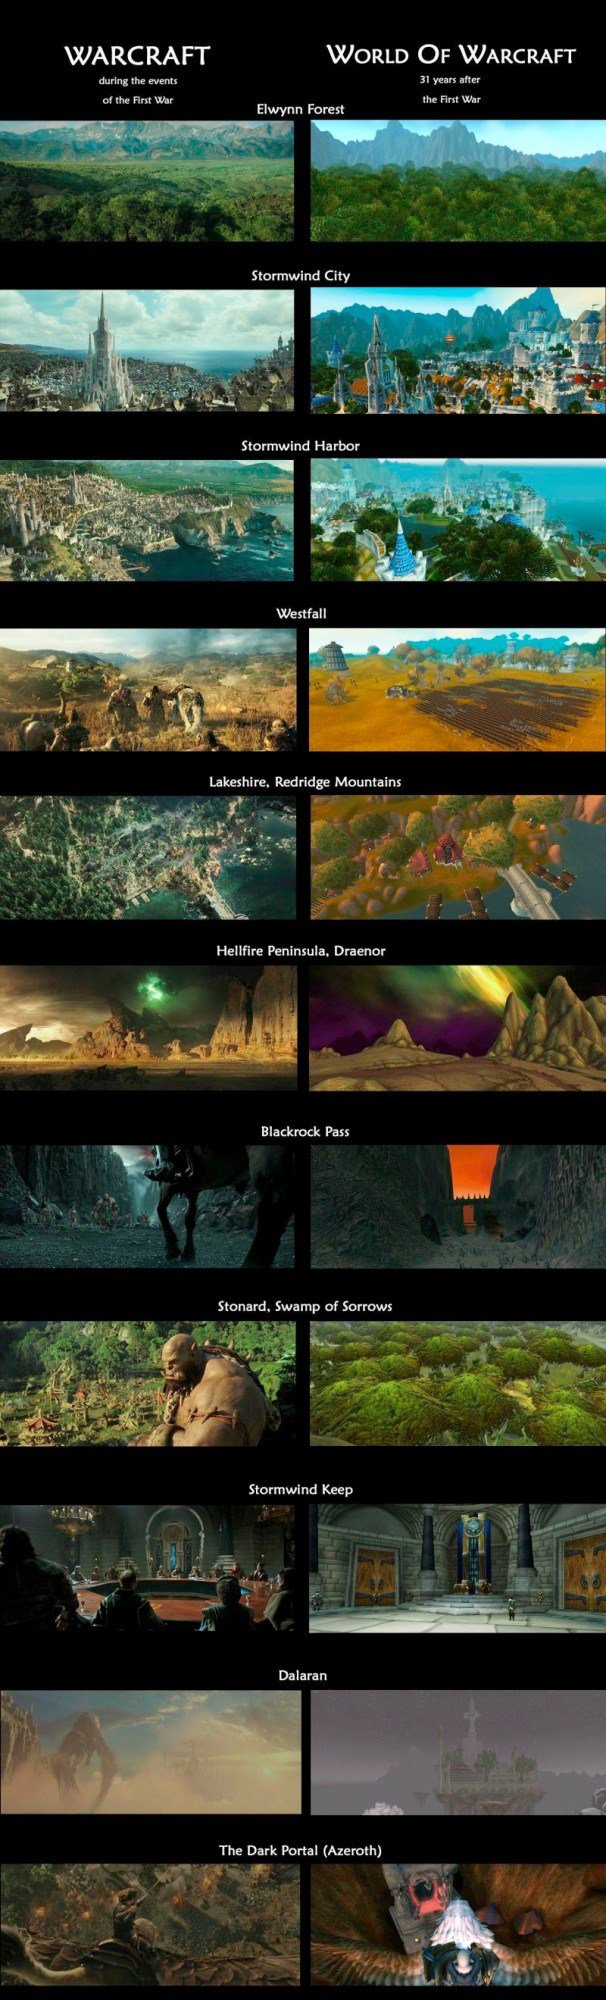 Все о мире и вселенной Warcraft, история мира Warcraft 